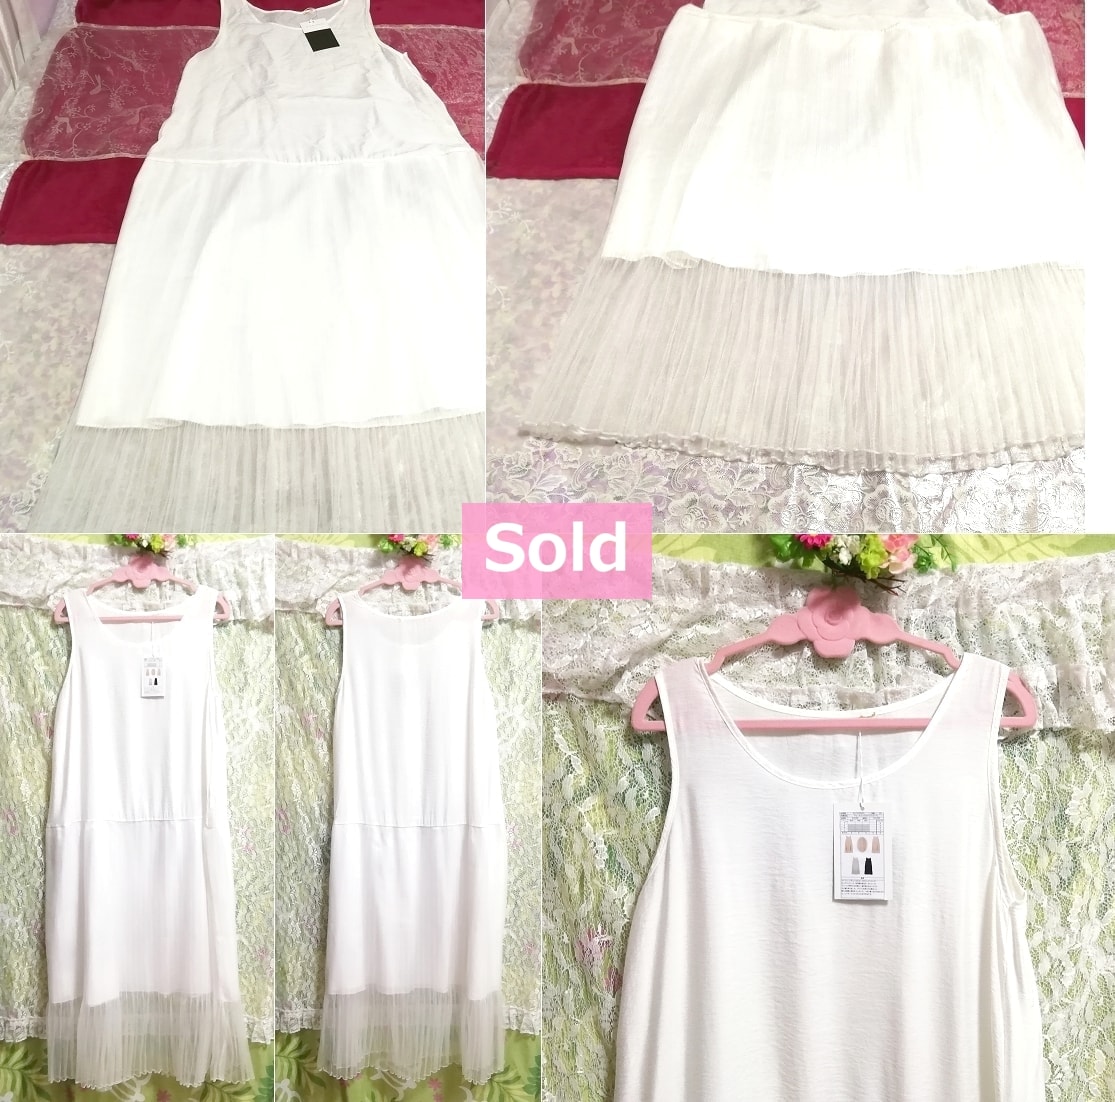 白色背心薄纱裙超长连衣裙价格16, 200标签，连衣裙&长裙&M尺寸